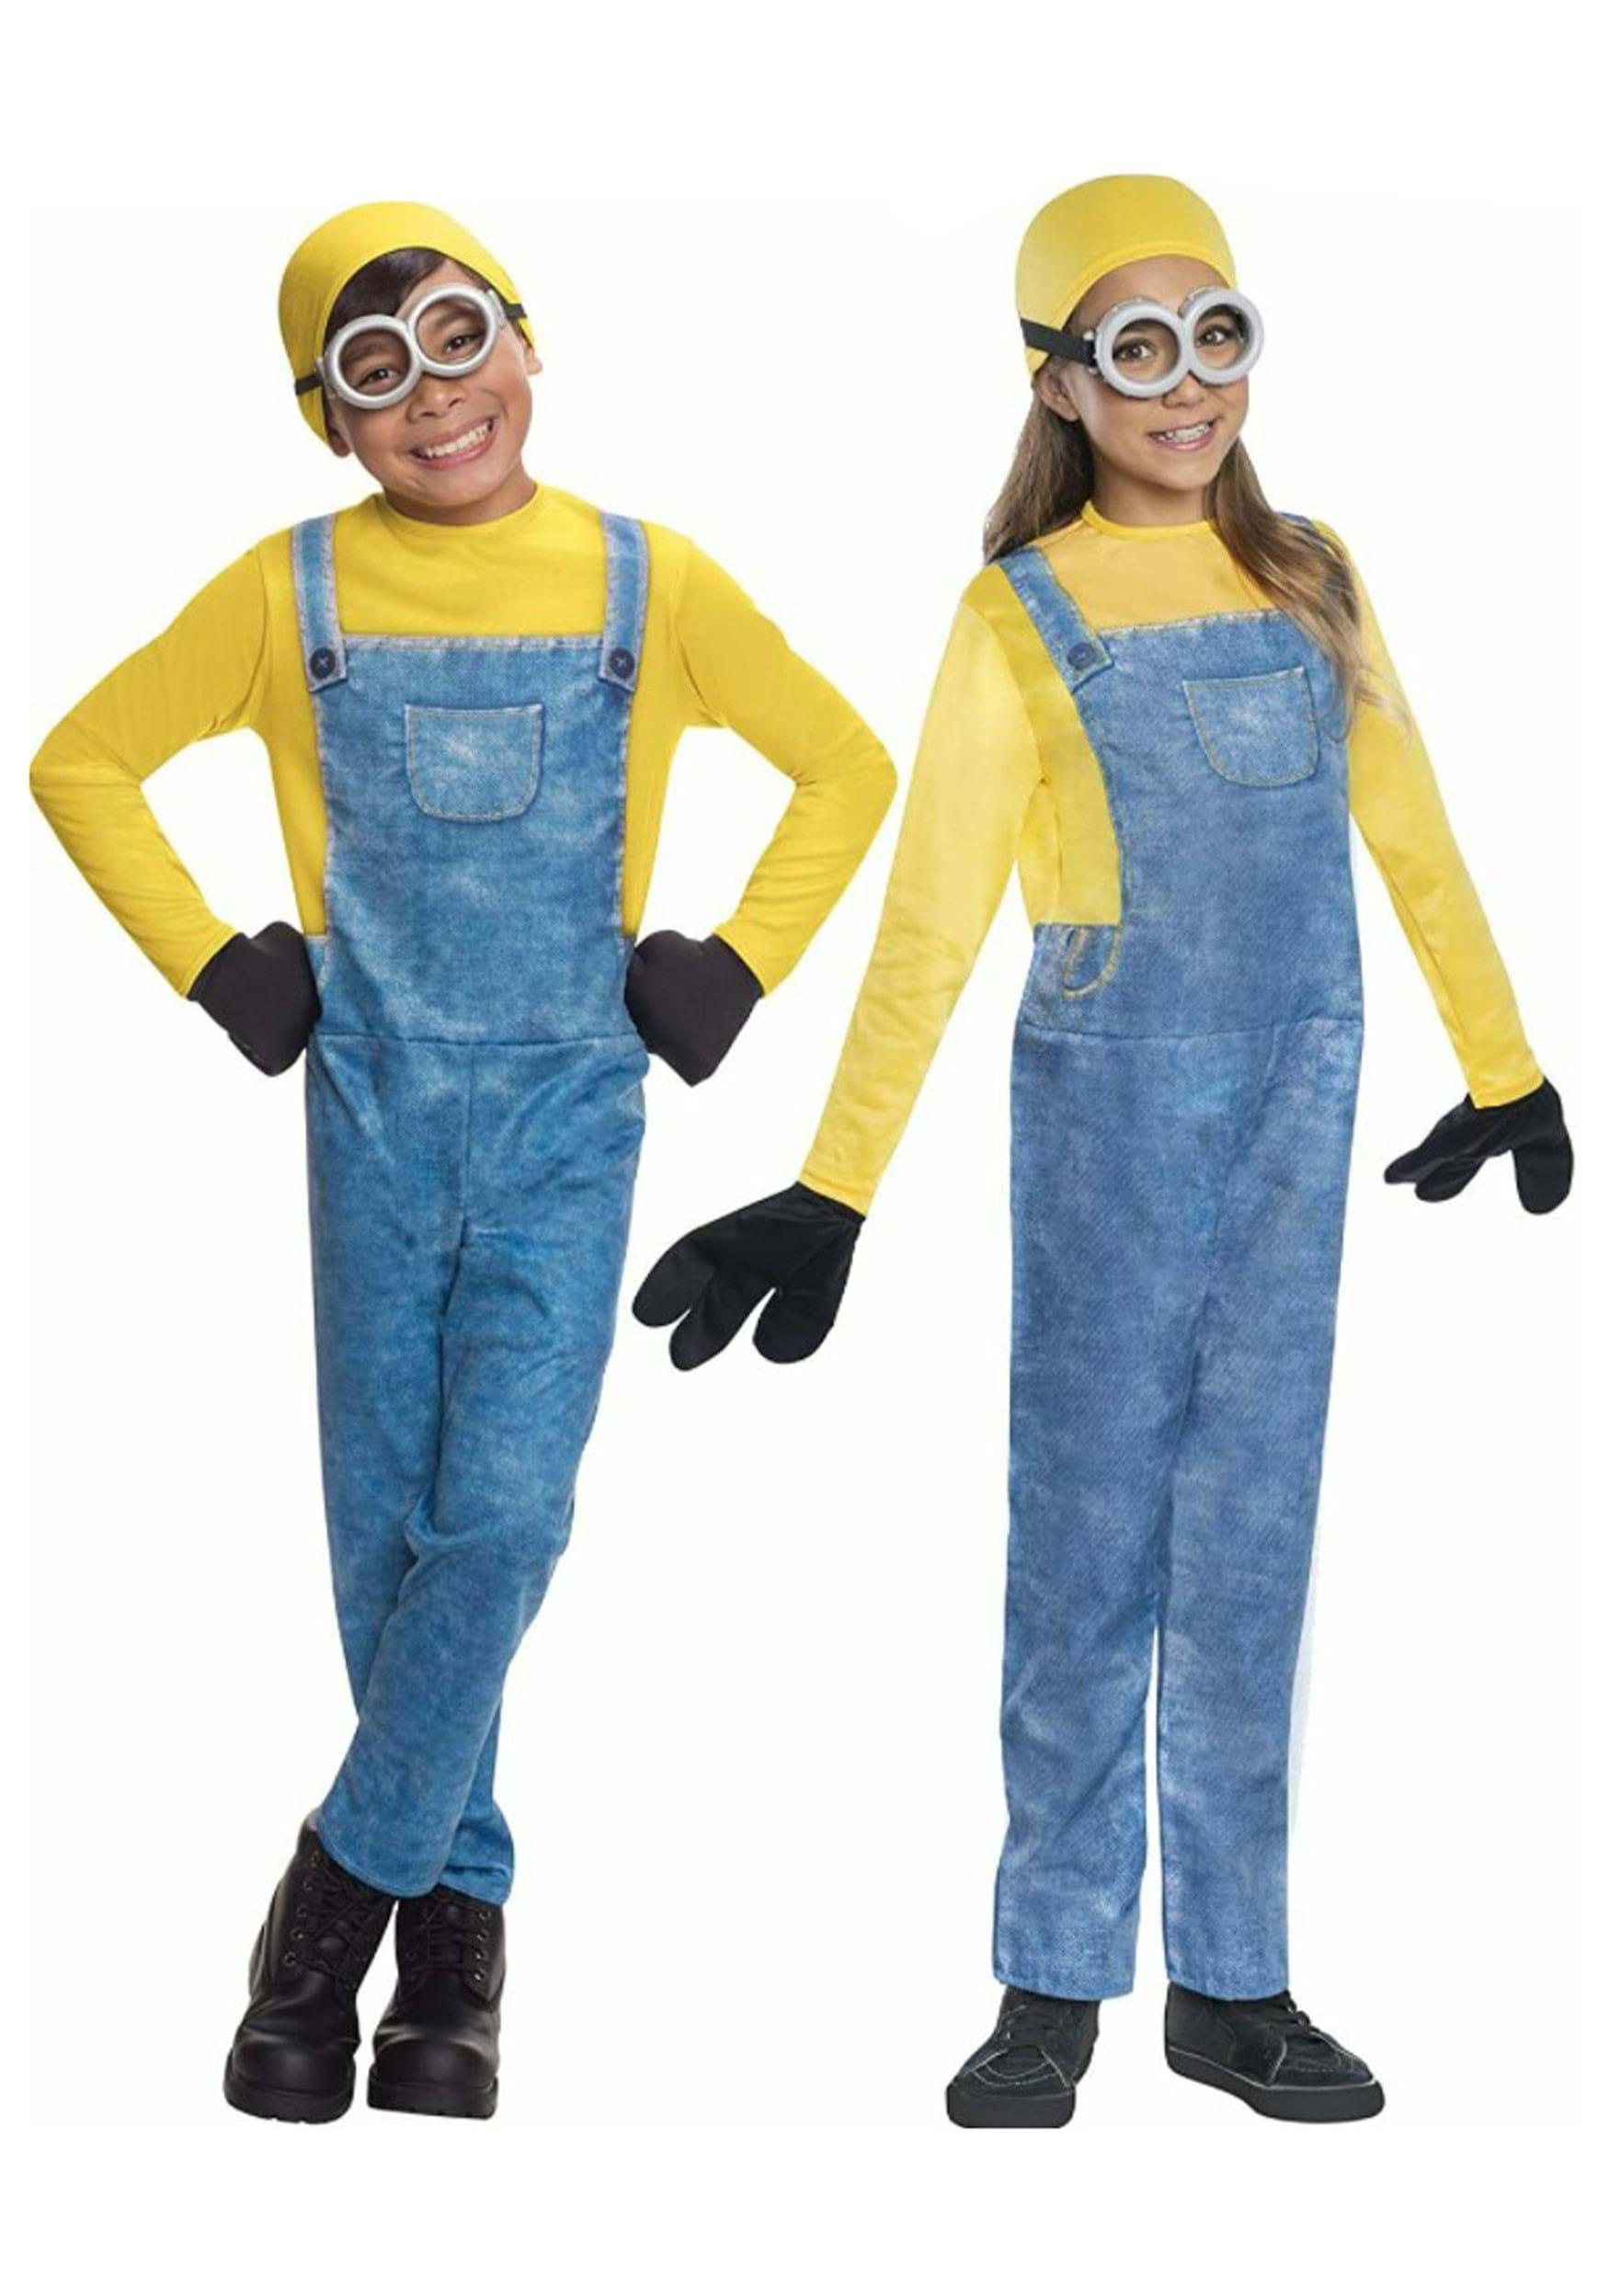 El disfraz de Minion incluye gafas de Minion, gorro amarillo y delantal azul